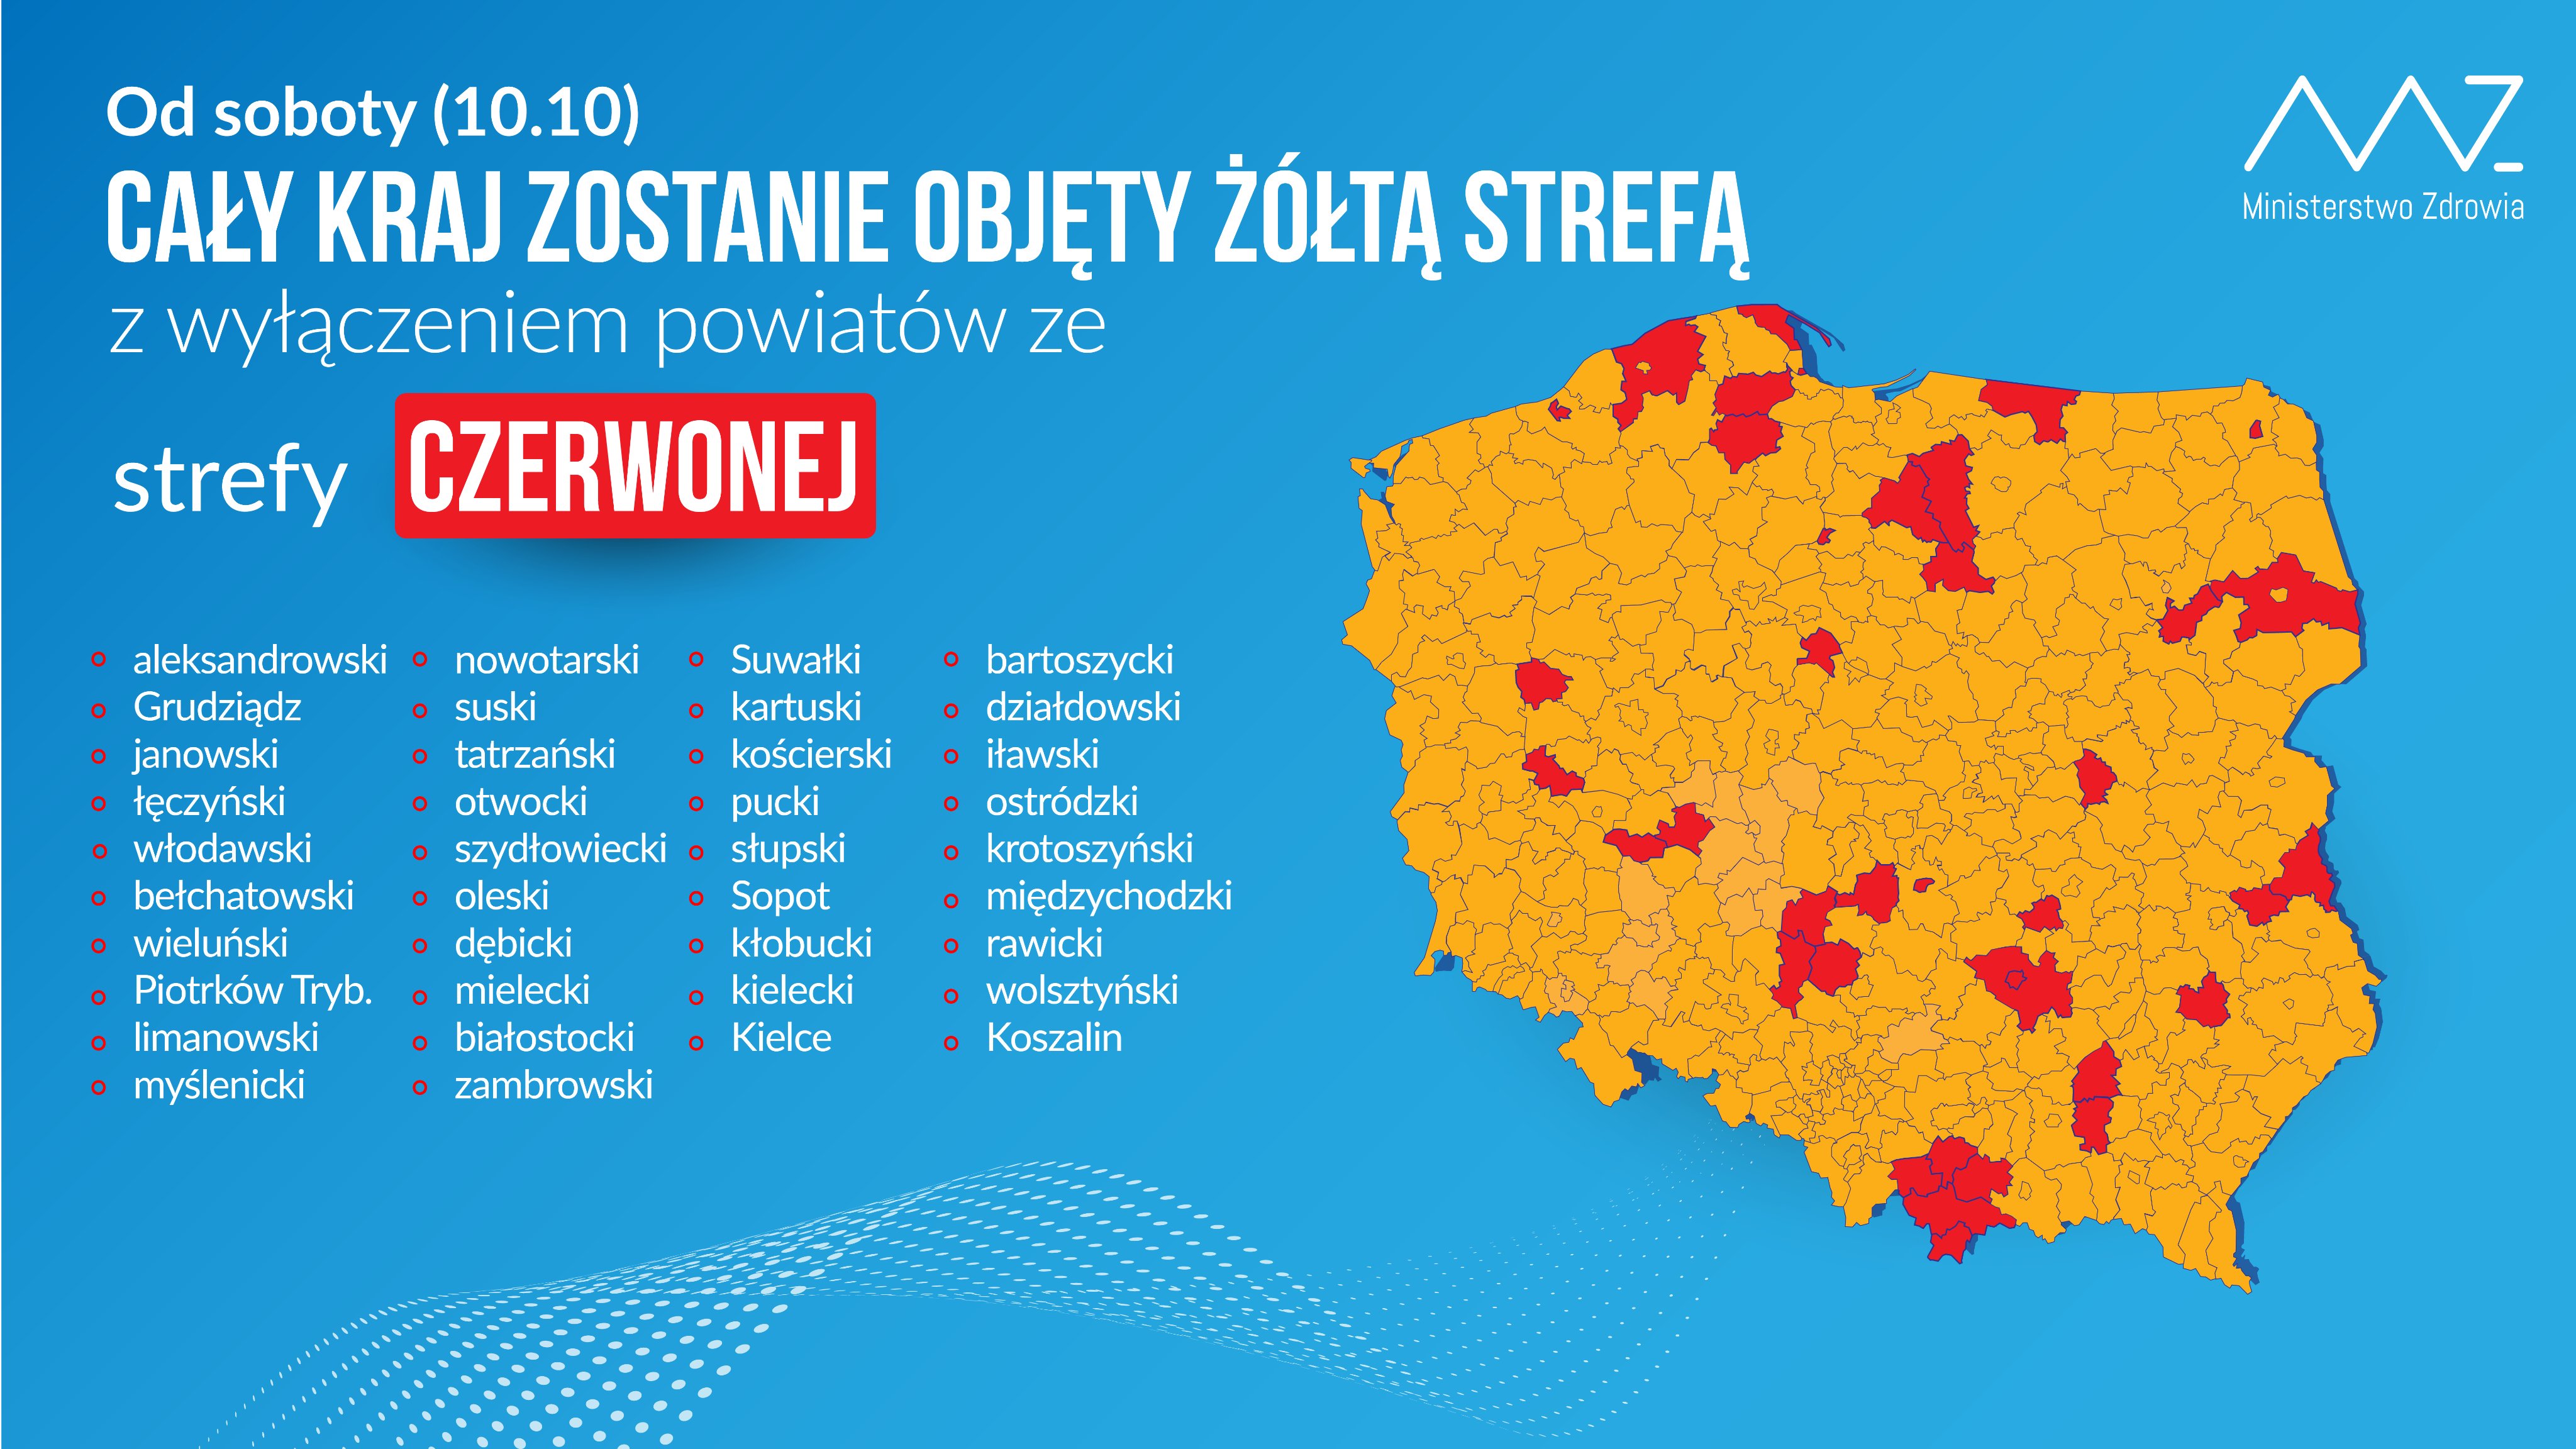 materiały prasowe Kancelarii Prezesa Rady Ministrów (gov.pl)